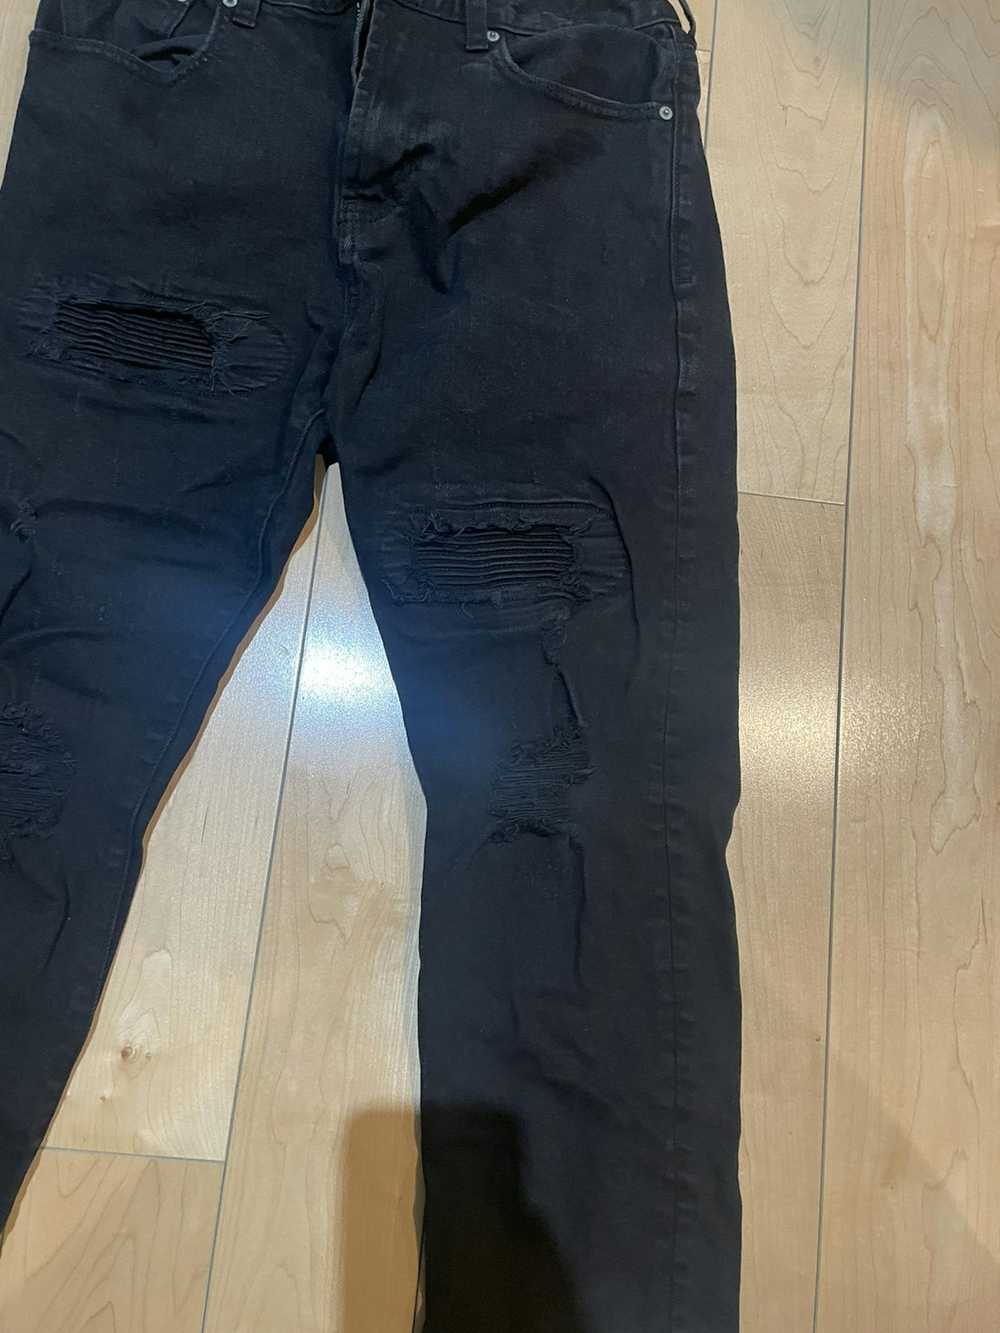 Pacsun Pacsun black slim taper jeans size 30x32 - image 2